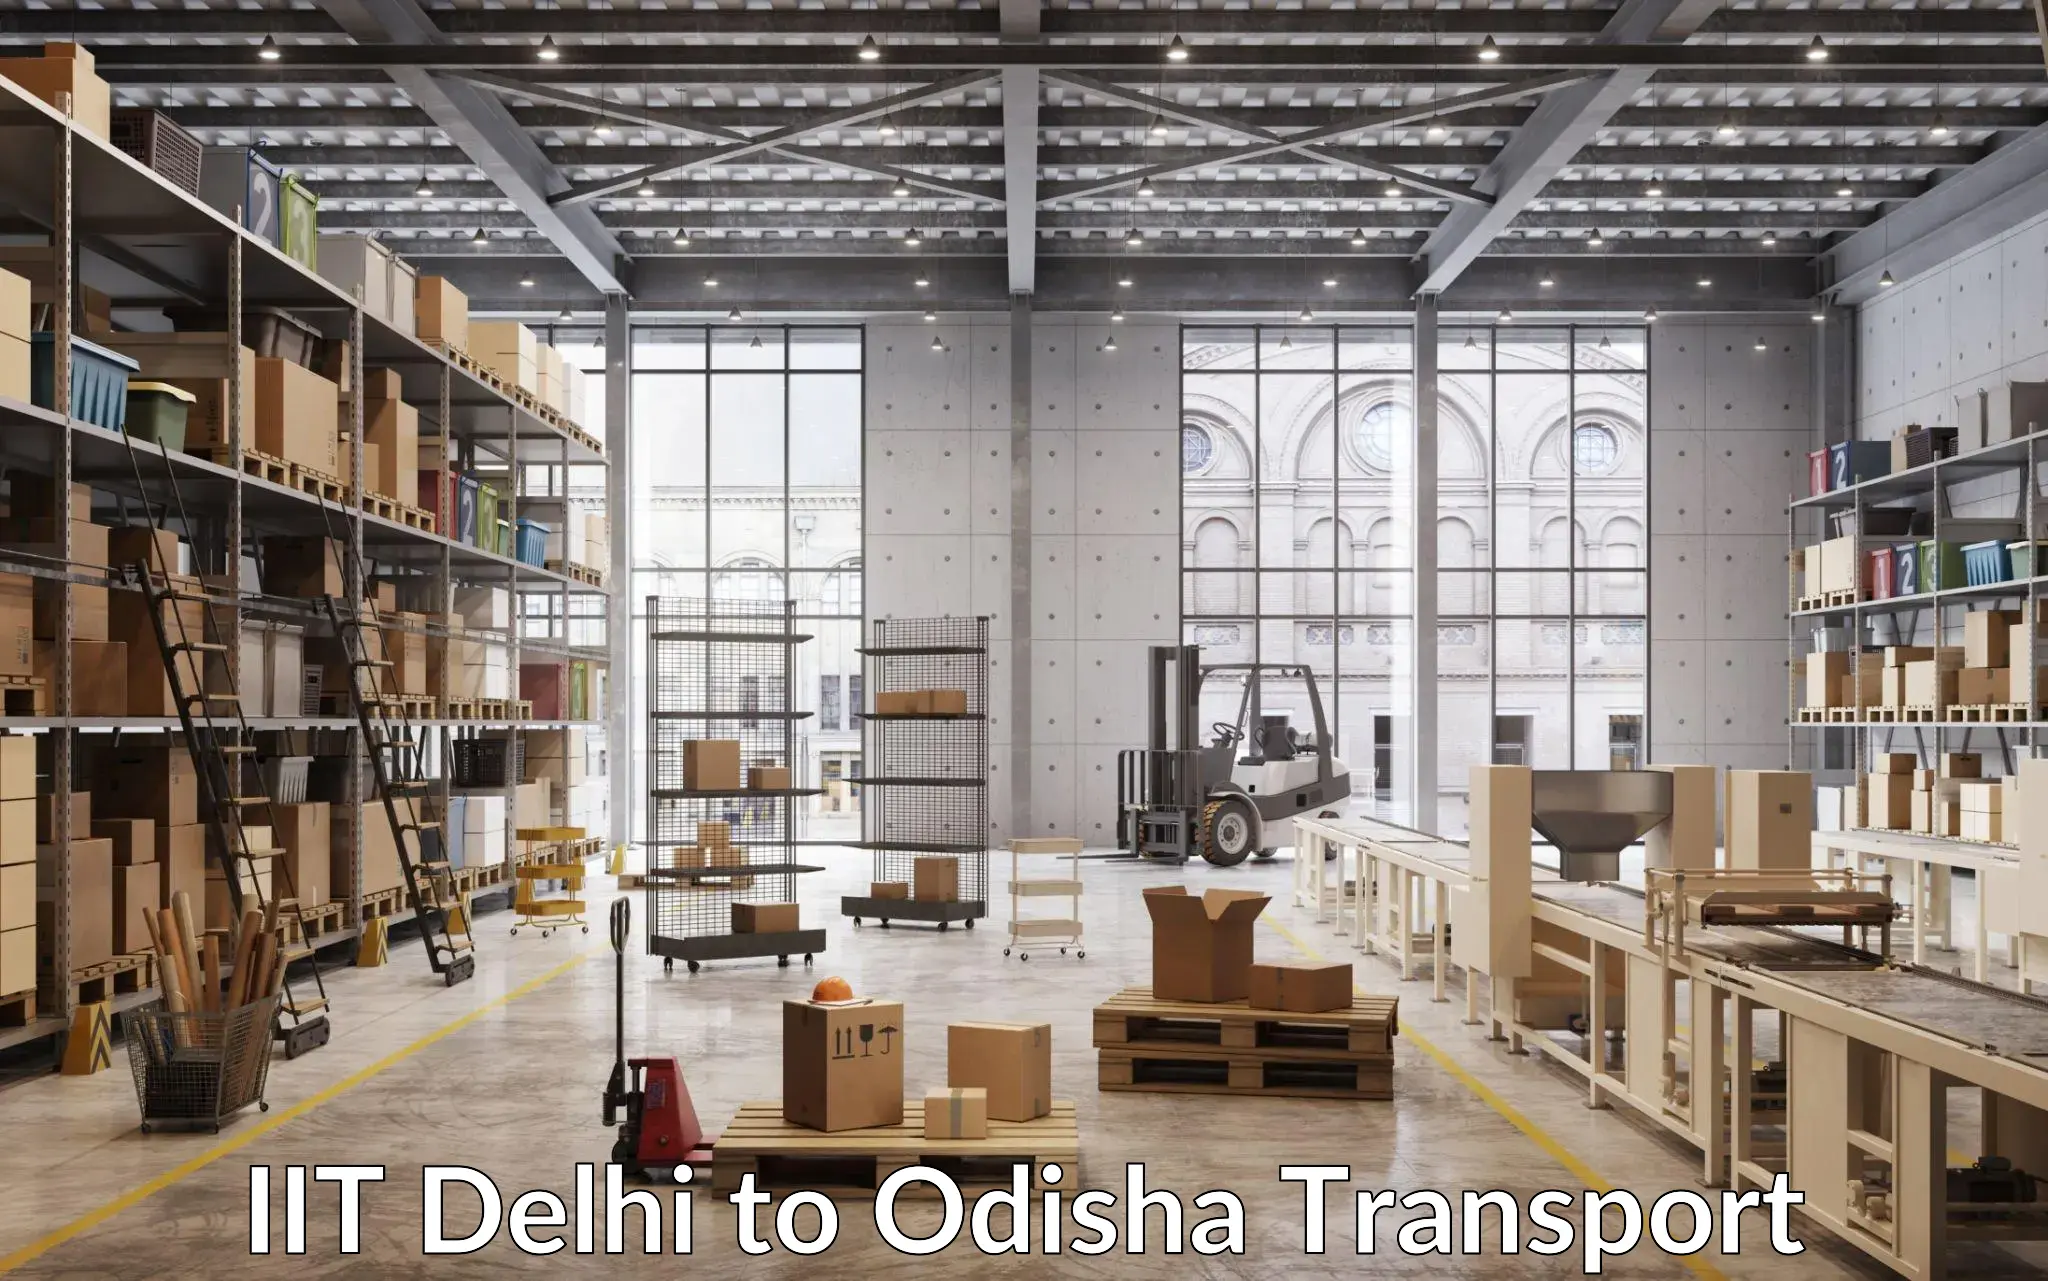 Lorry transport service IIT Delhi to Keonjhar